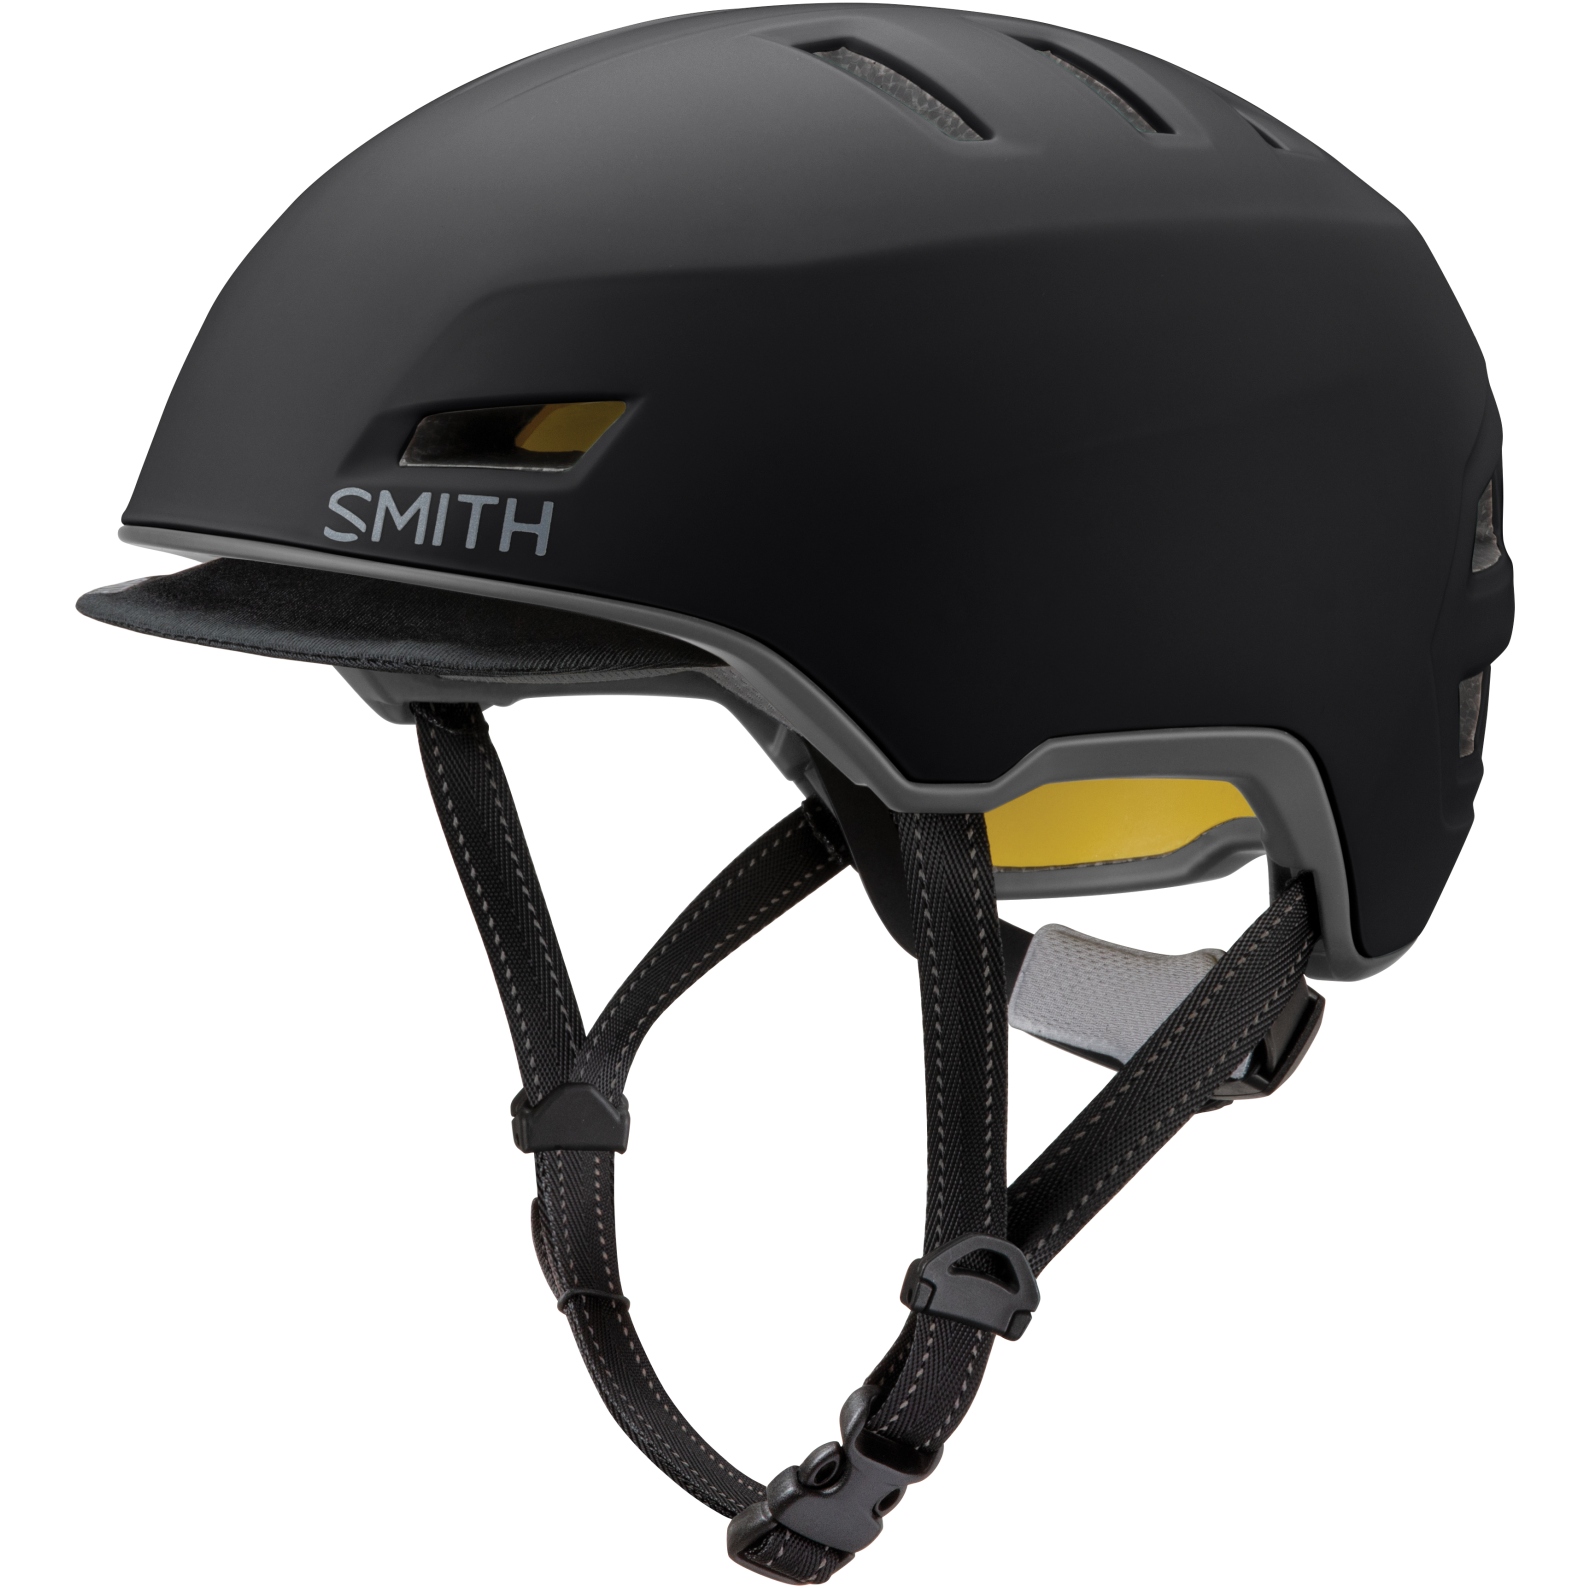 Productfoto van Smith Express MIPS Helmet - Black Matte Cement